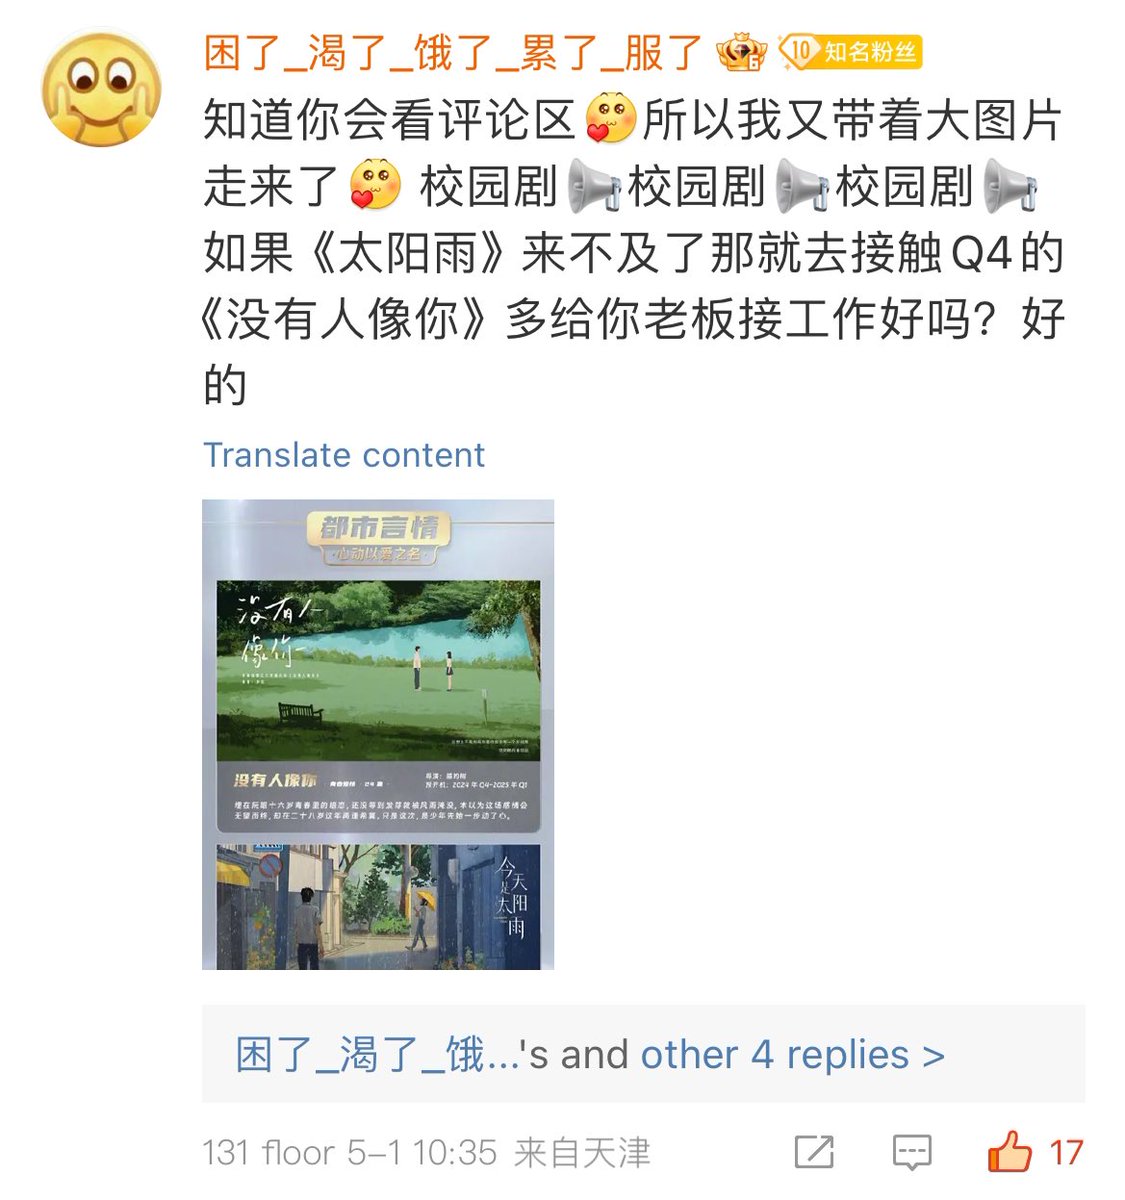 ใครมีเวยป๋อช่วยกดถูกใจความเห็นนี้ จากโพสของสตูให้ทีน้า ตามลิงค์นี้เลย📍 weibo.com/7717408547/502…